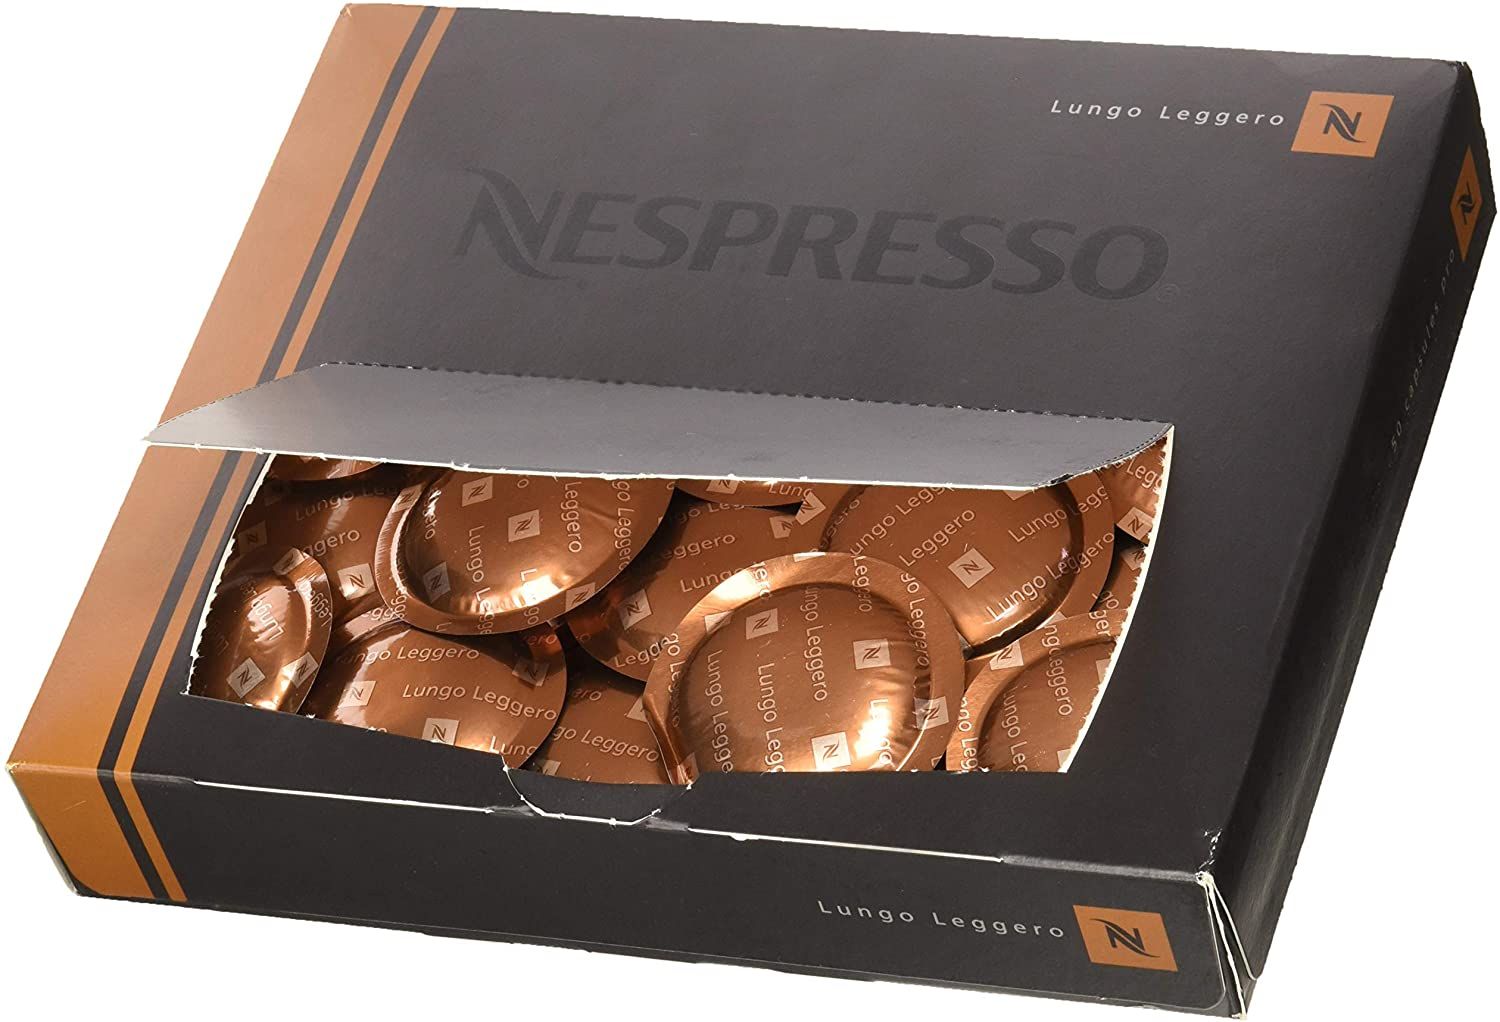 capsules café nespresso pro - petit-dejeuner